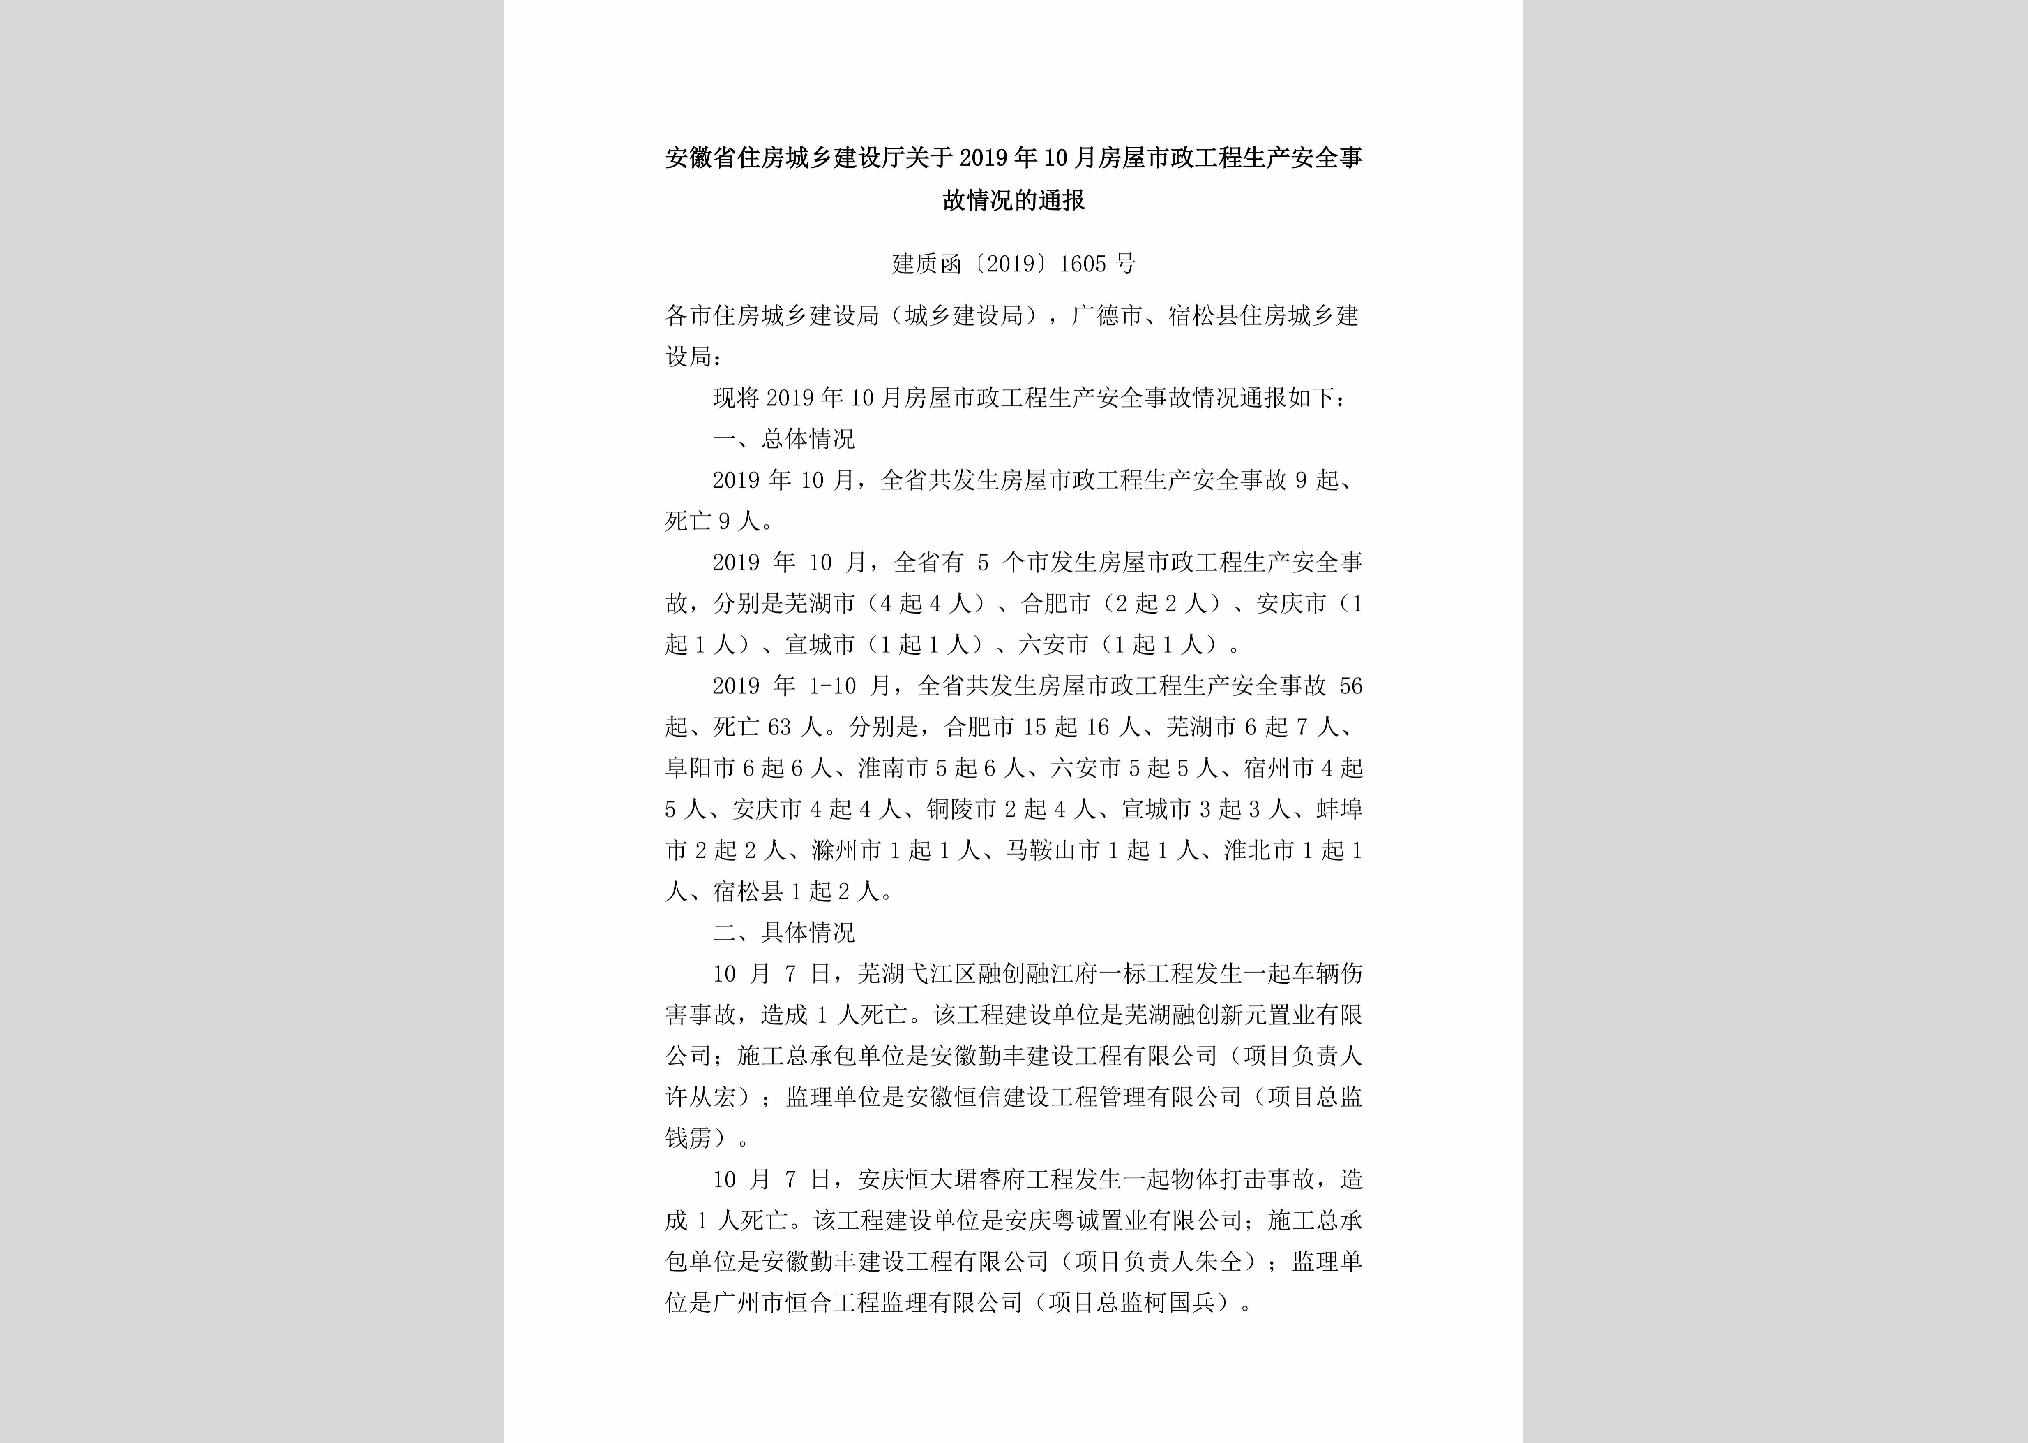 建质函[2019]1605号：安徽省住房城乡建设厅关于2019年10月房屋市政工程生产安全事故情况的通报